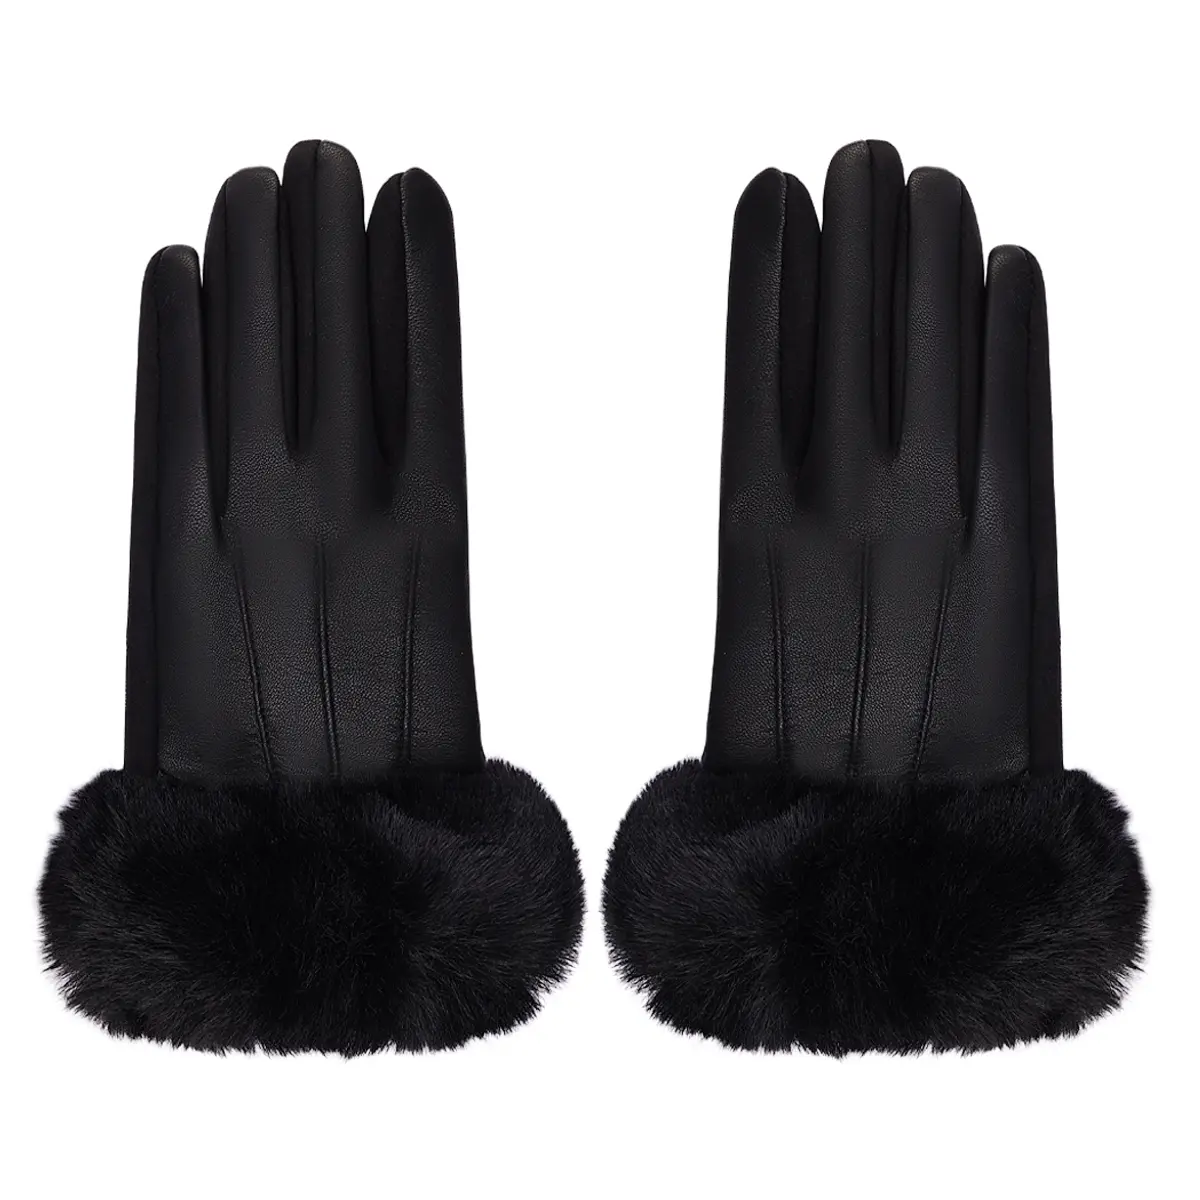 Handschoenen Faux Leer zwart zwarte gloves handschoen dames bont kopen bestellen winter accessoires